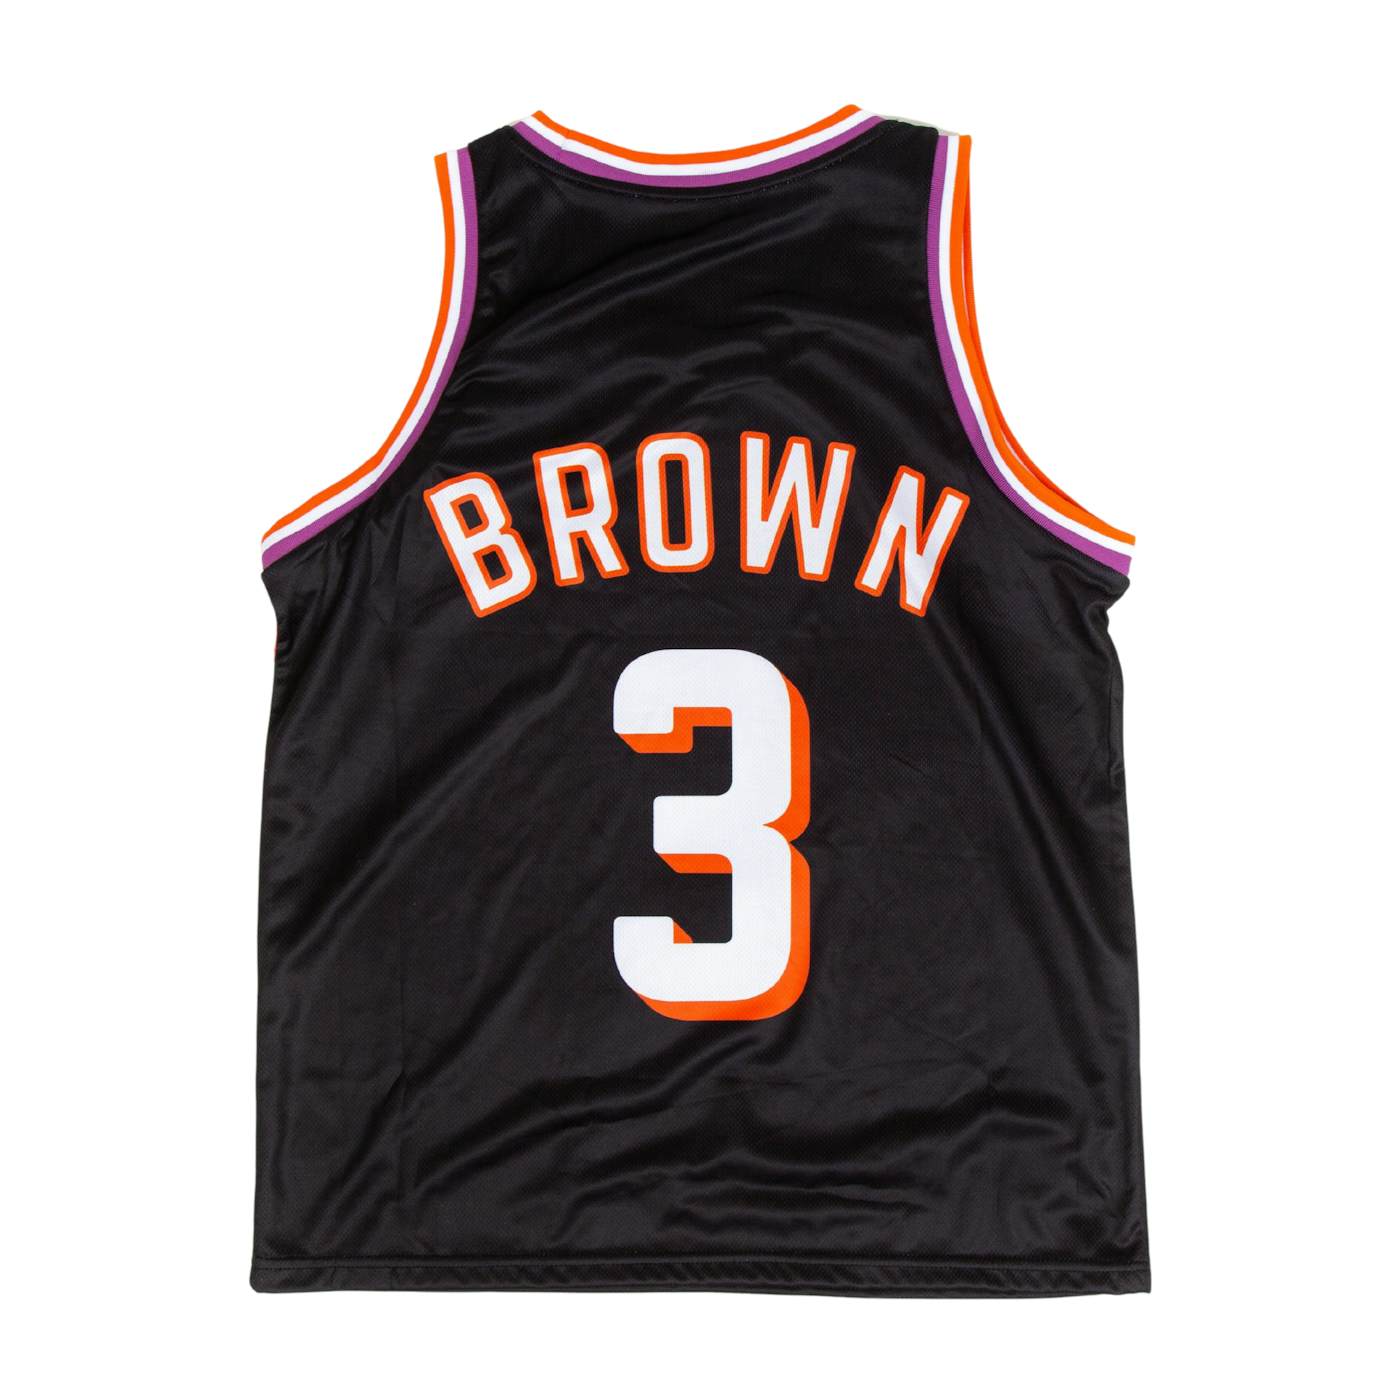 Kane Brown Basketball Jersey